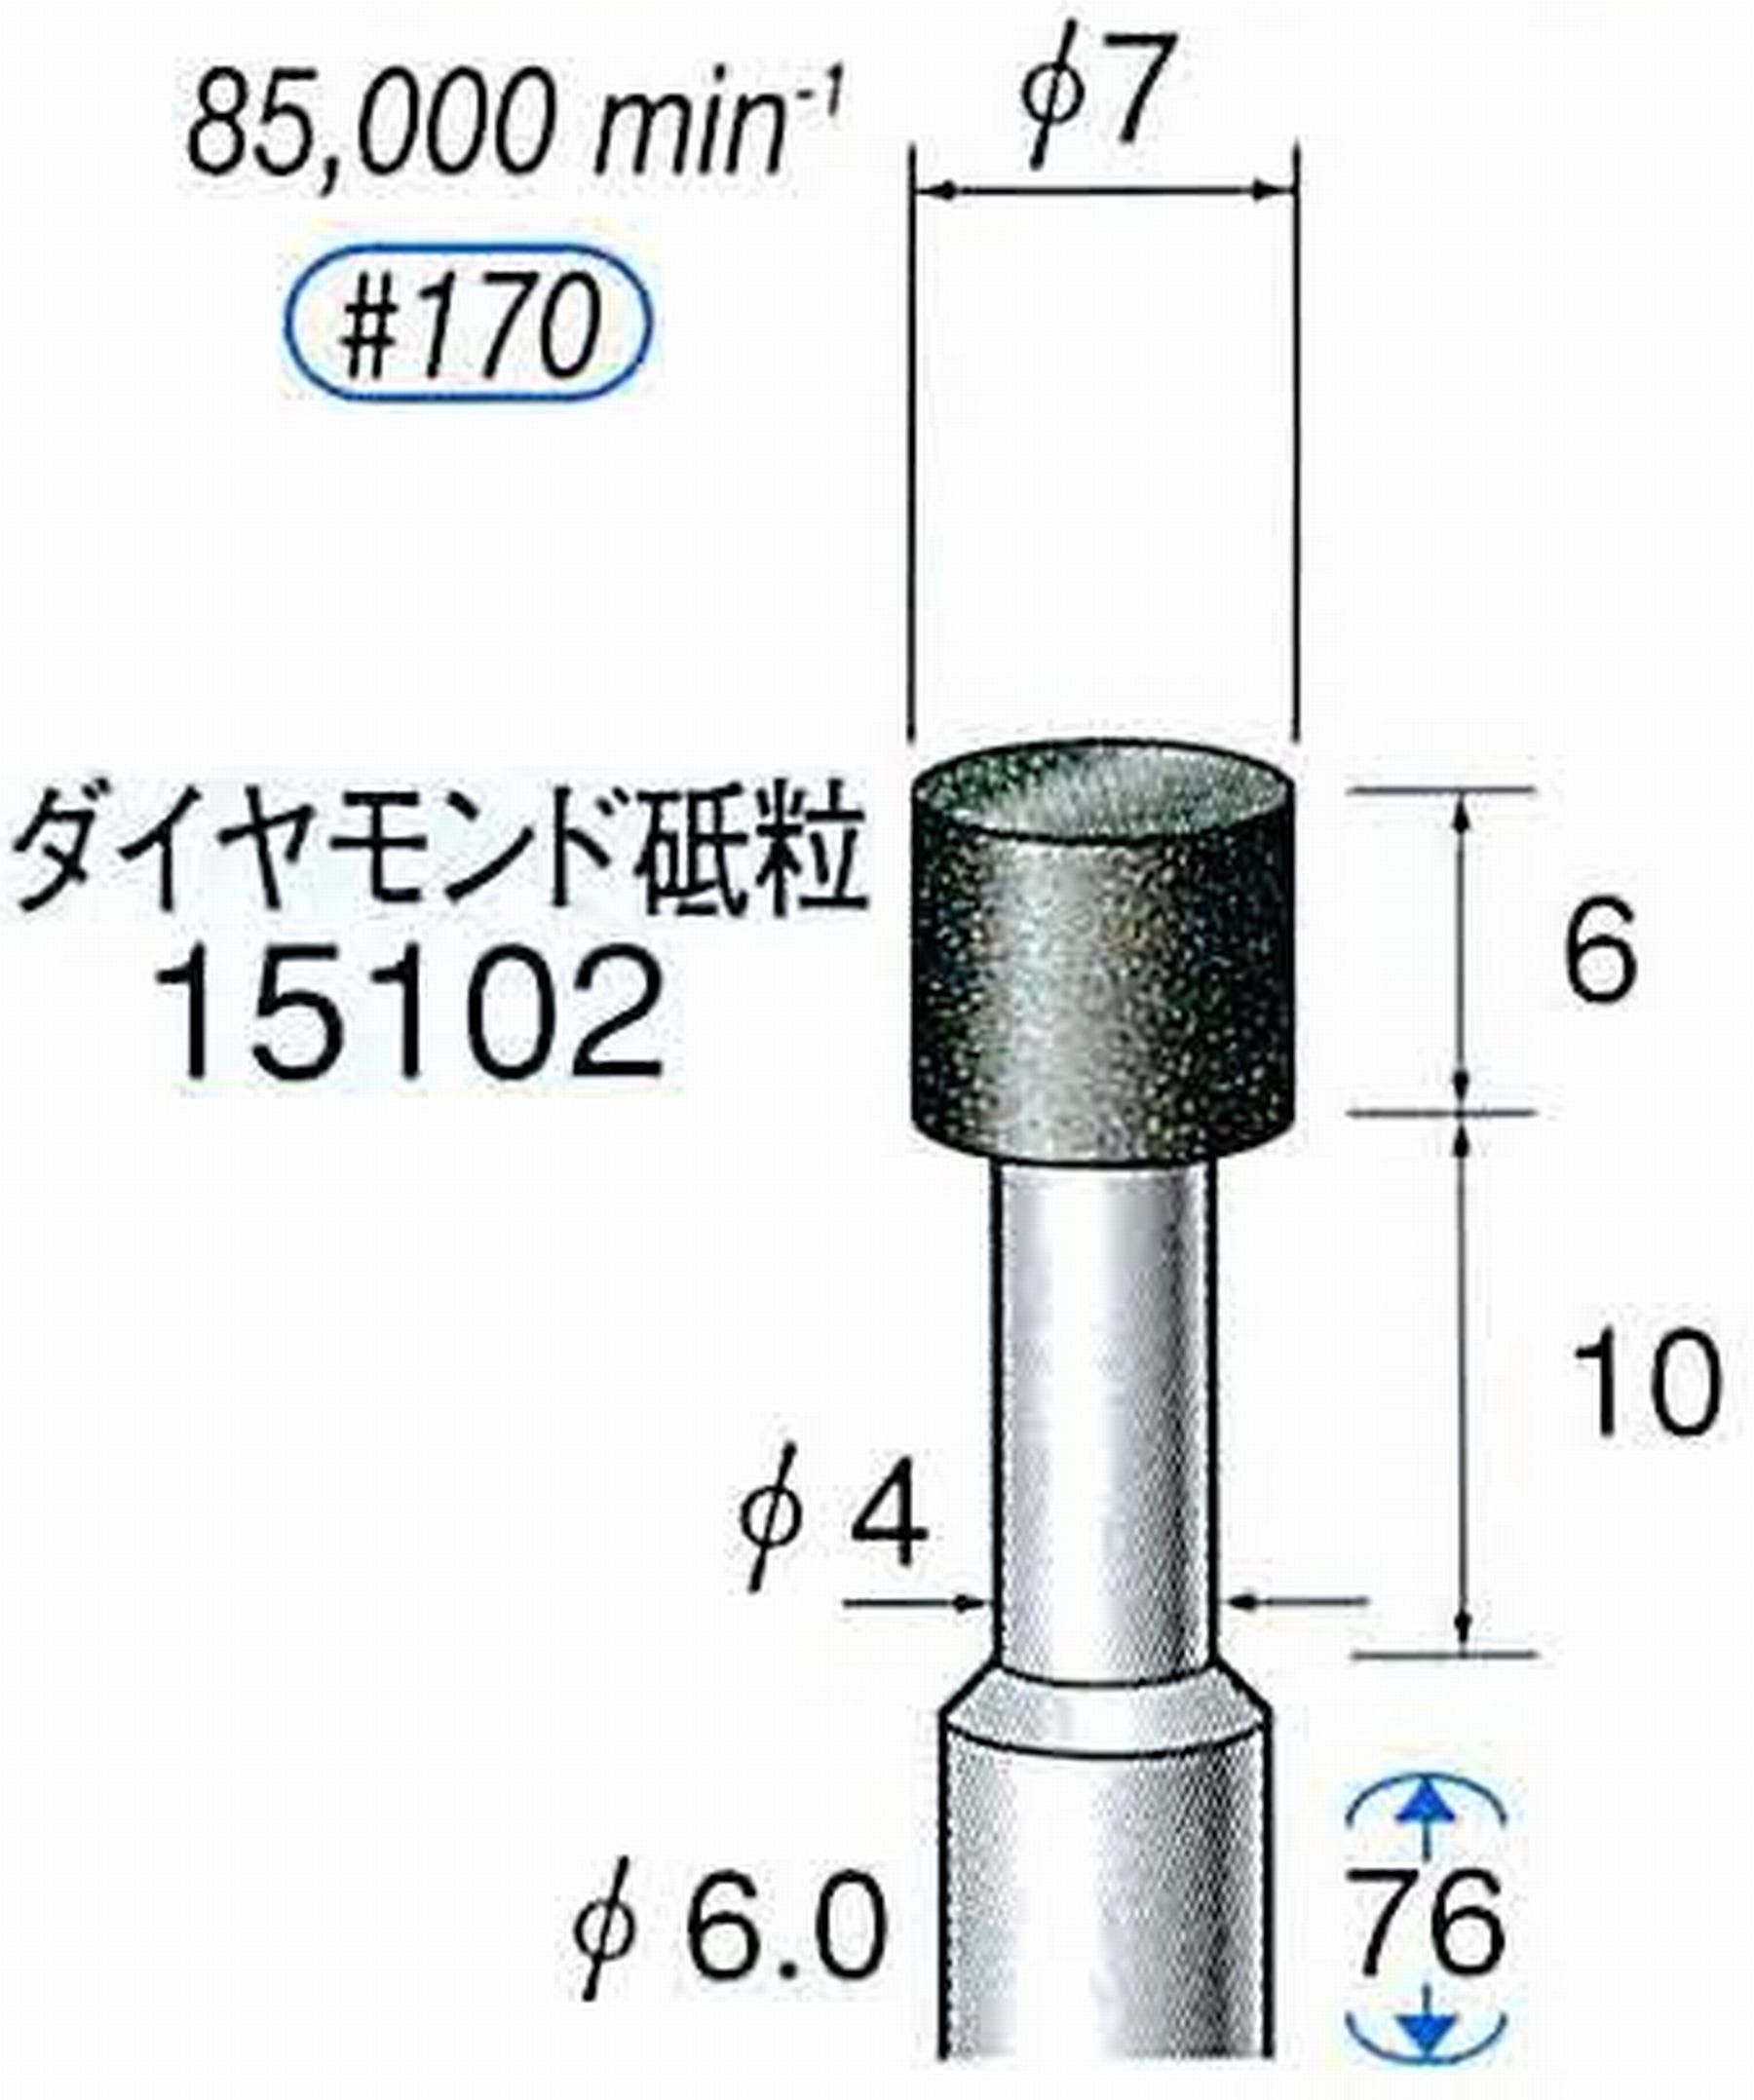 ナカニシ/NAKANISHI レジノイドダイヤモンド ダイヤモンド砥粒 軸径(シャンク)φ6.0mm 15102